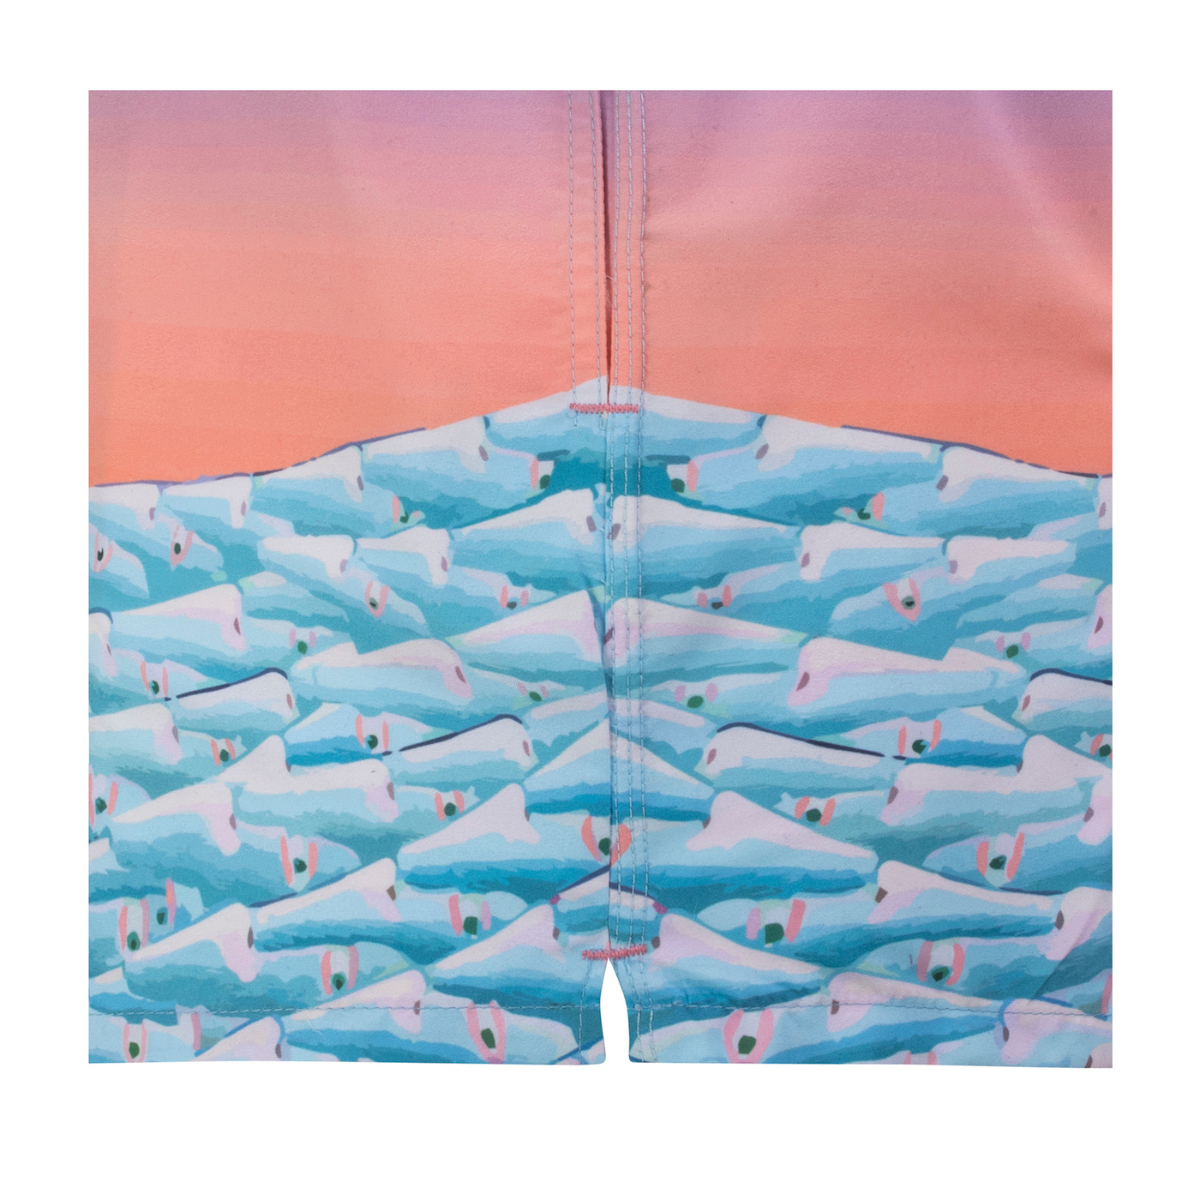 Limited Edition Shorts | Marlene Steyn / Ocean Bed